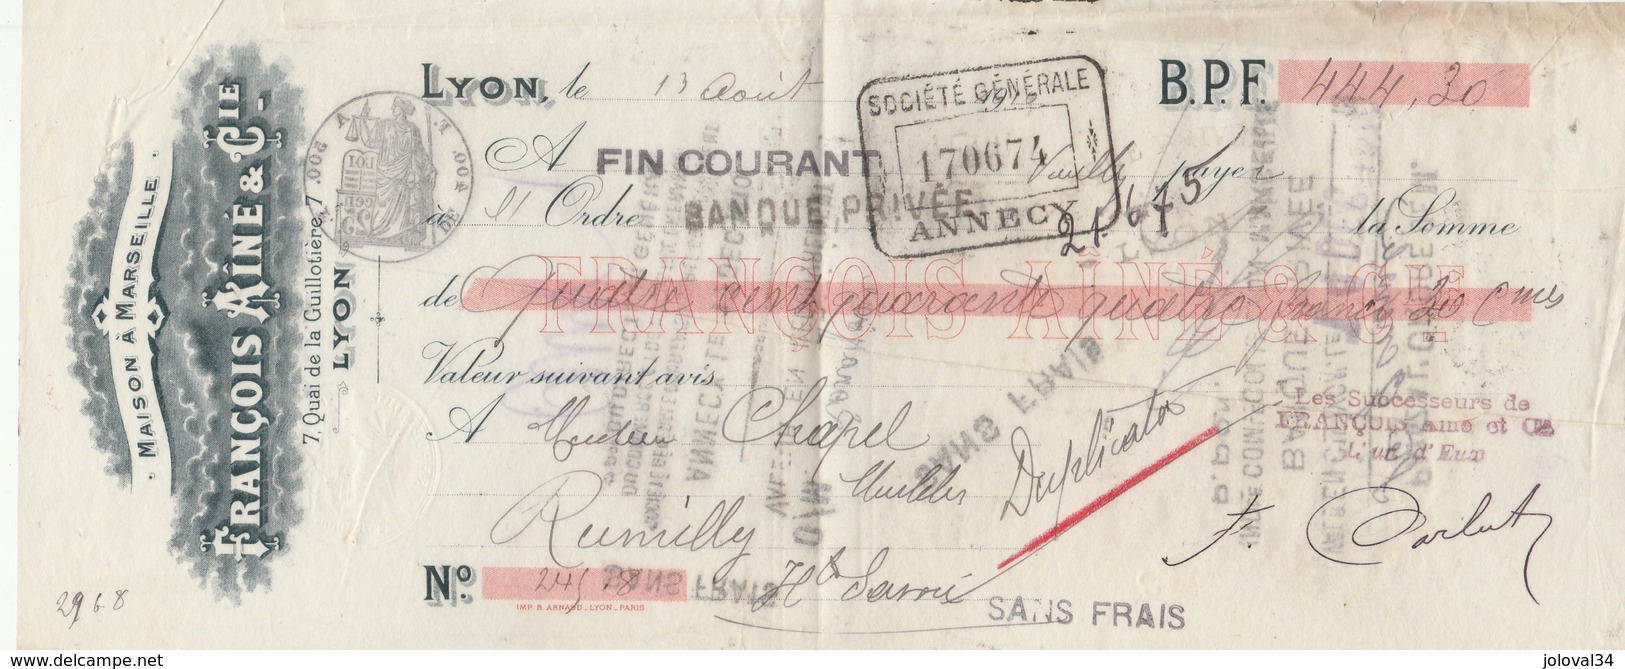 Lettre Change 13/8/1910 François Ainé LYON à Chapel Rumilly Haute Savoie Cachet Fiscal - Lettres De Change